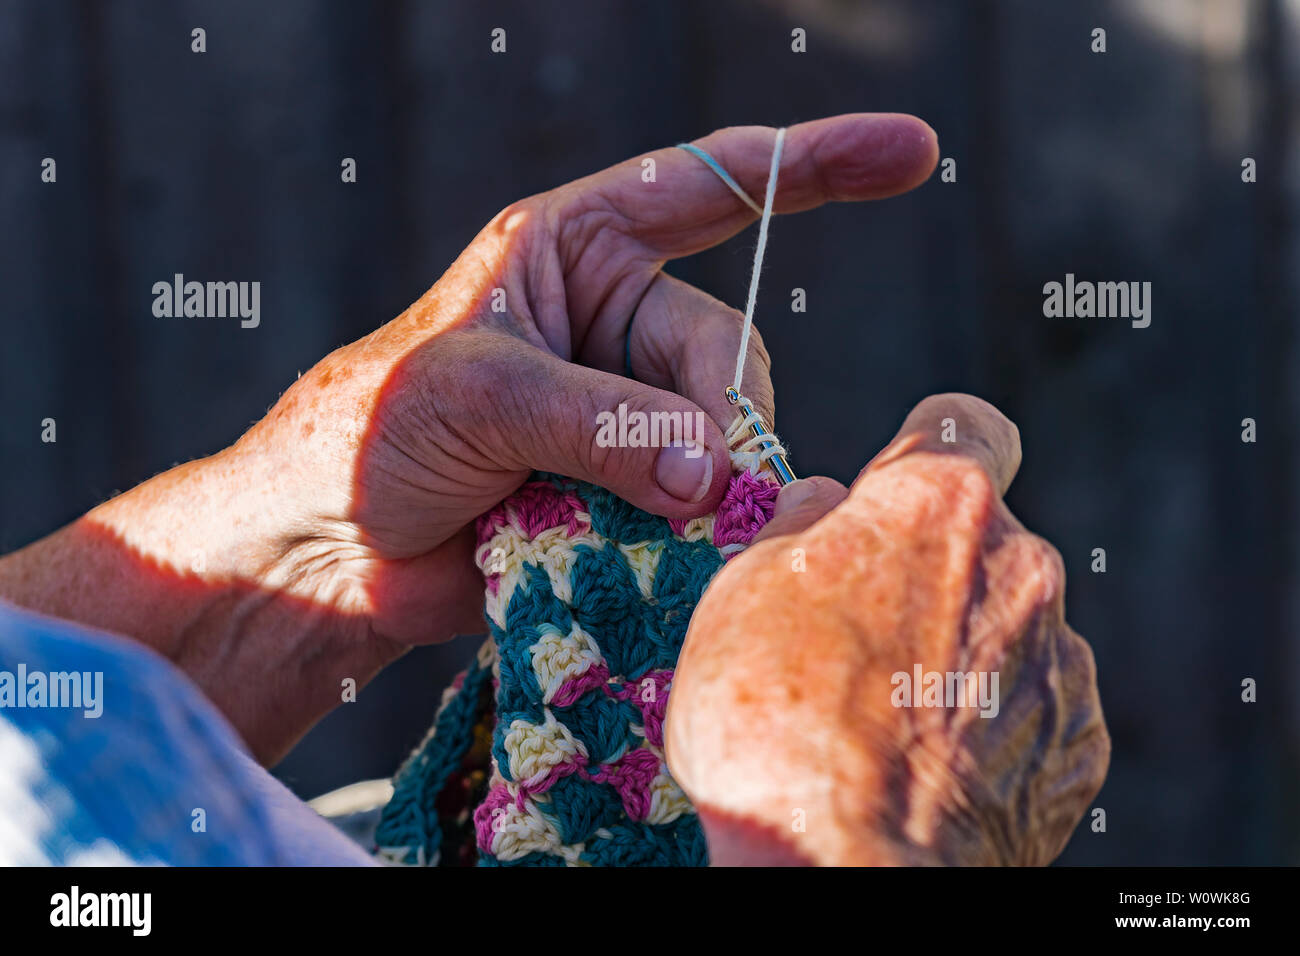 Häkelnde fleißige Hände bei der Arbeit.  Crocheting diligent hands at work. Stock Photo